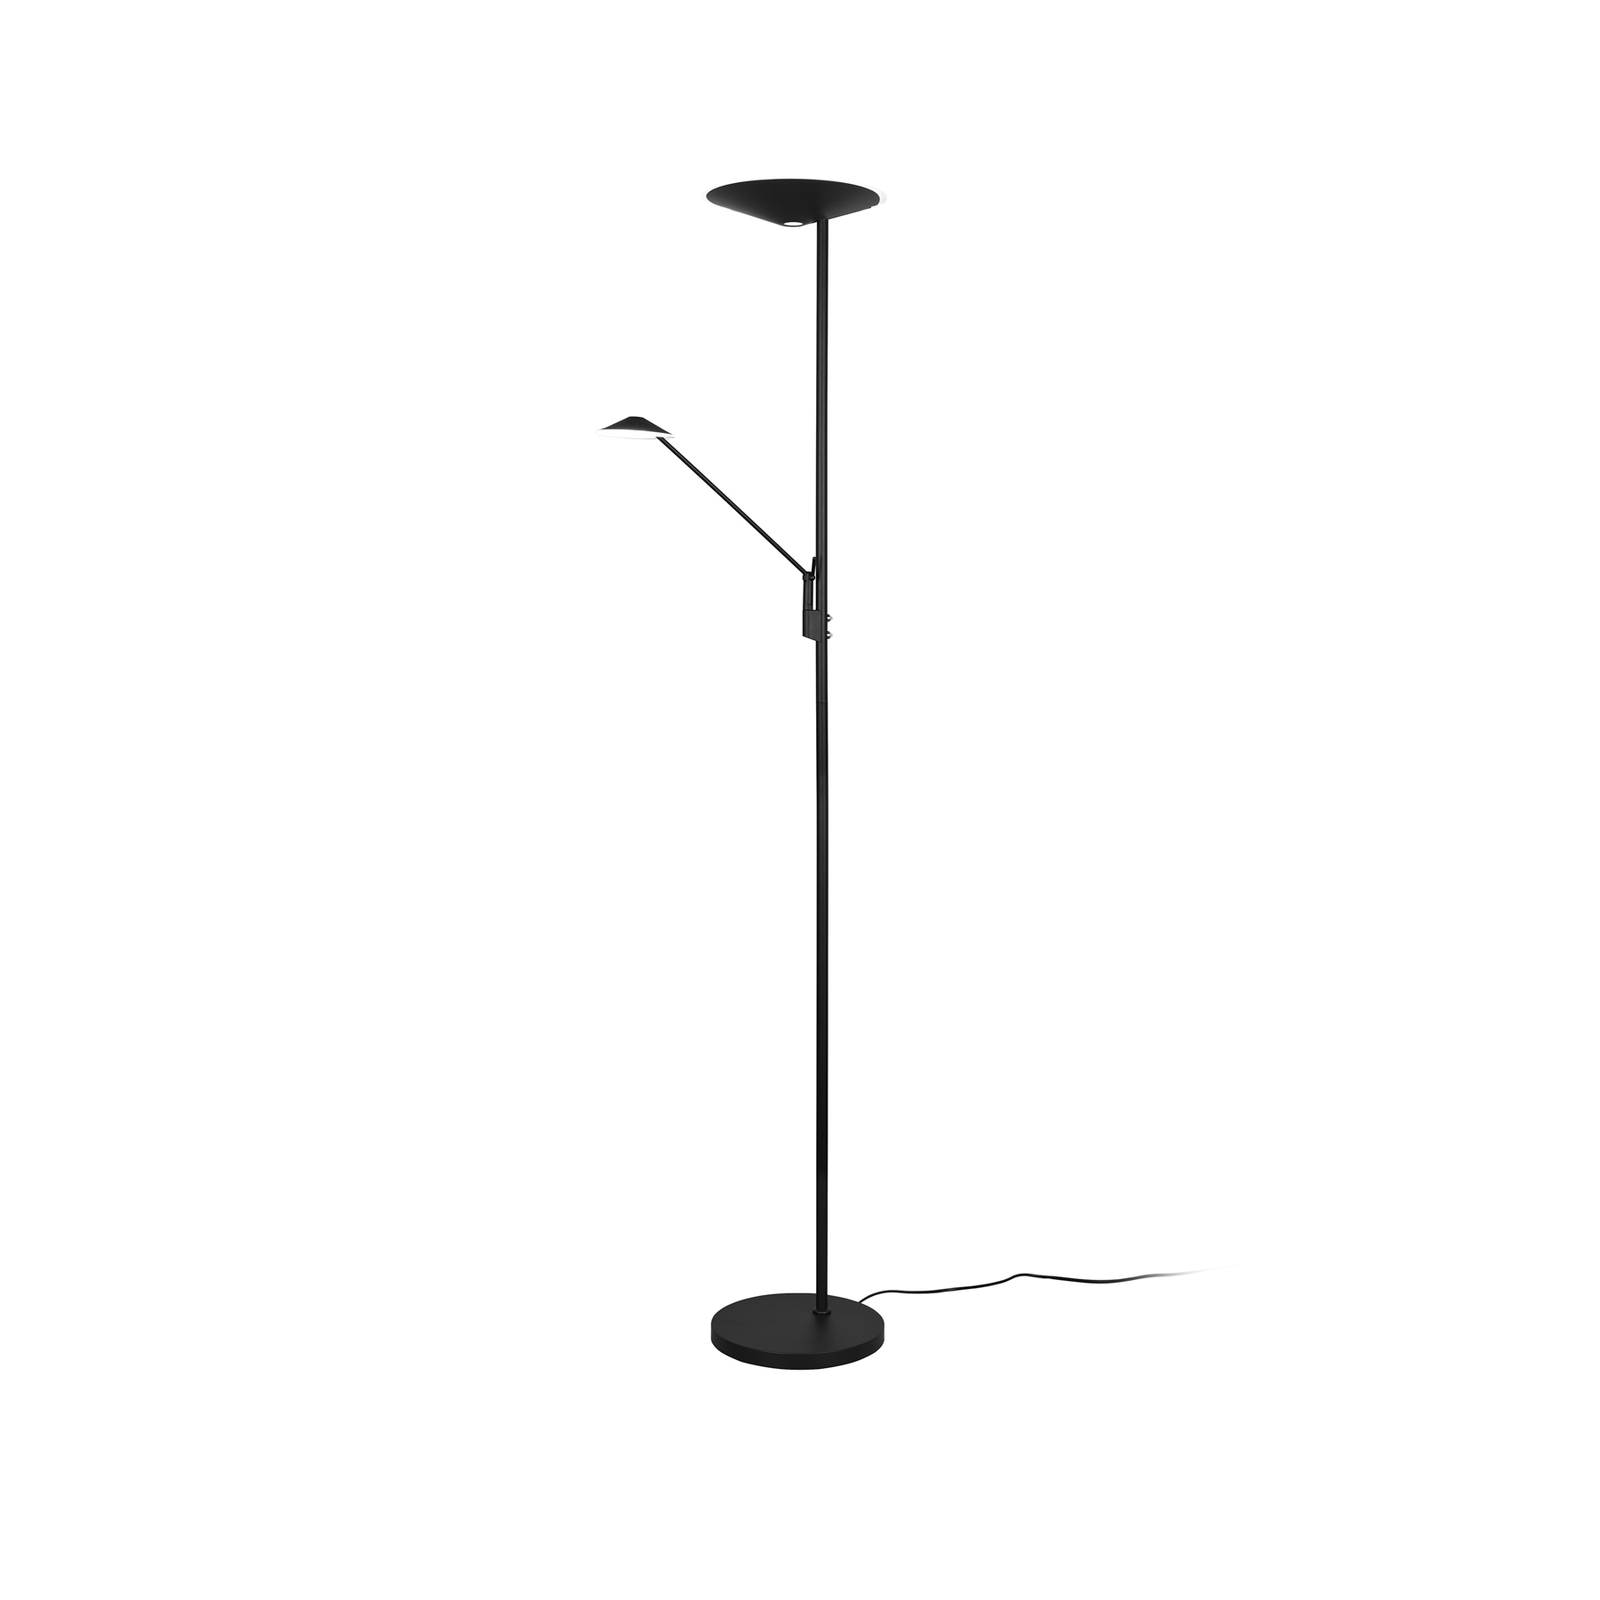 Brantford LED floor lamp reading lamp matt black